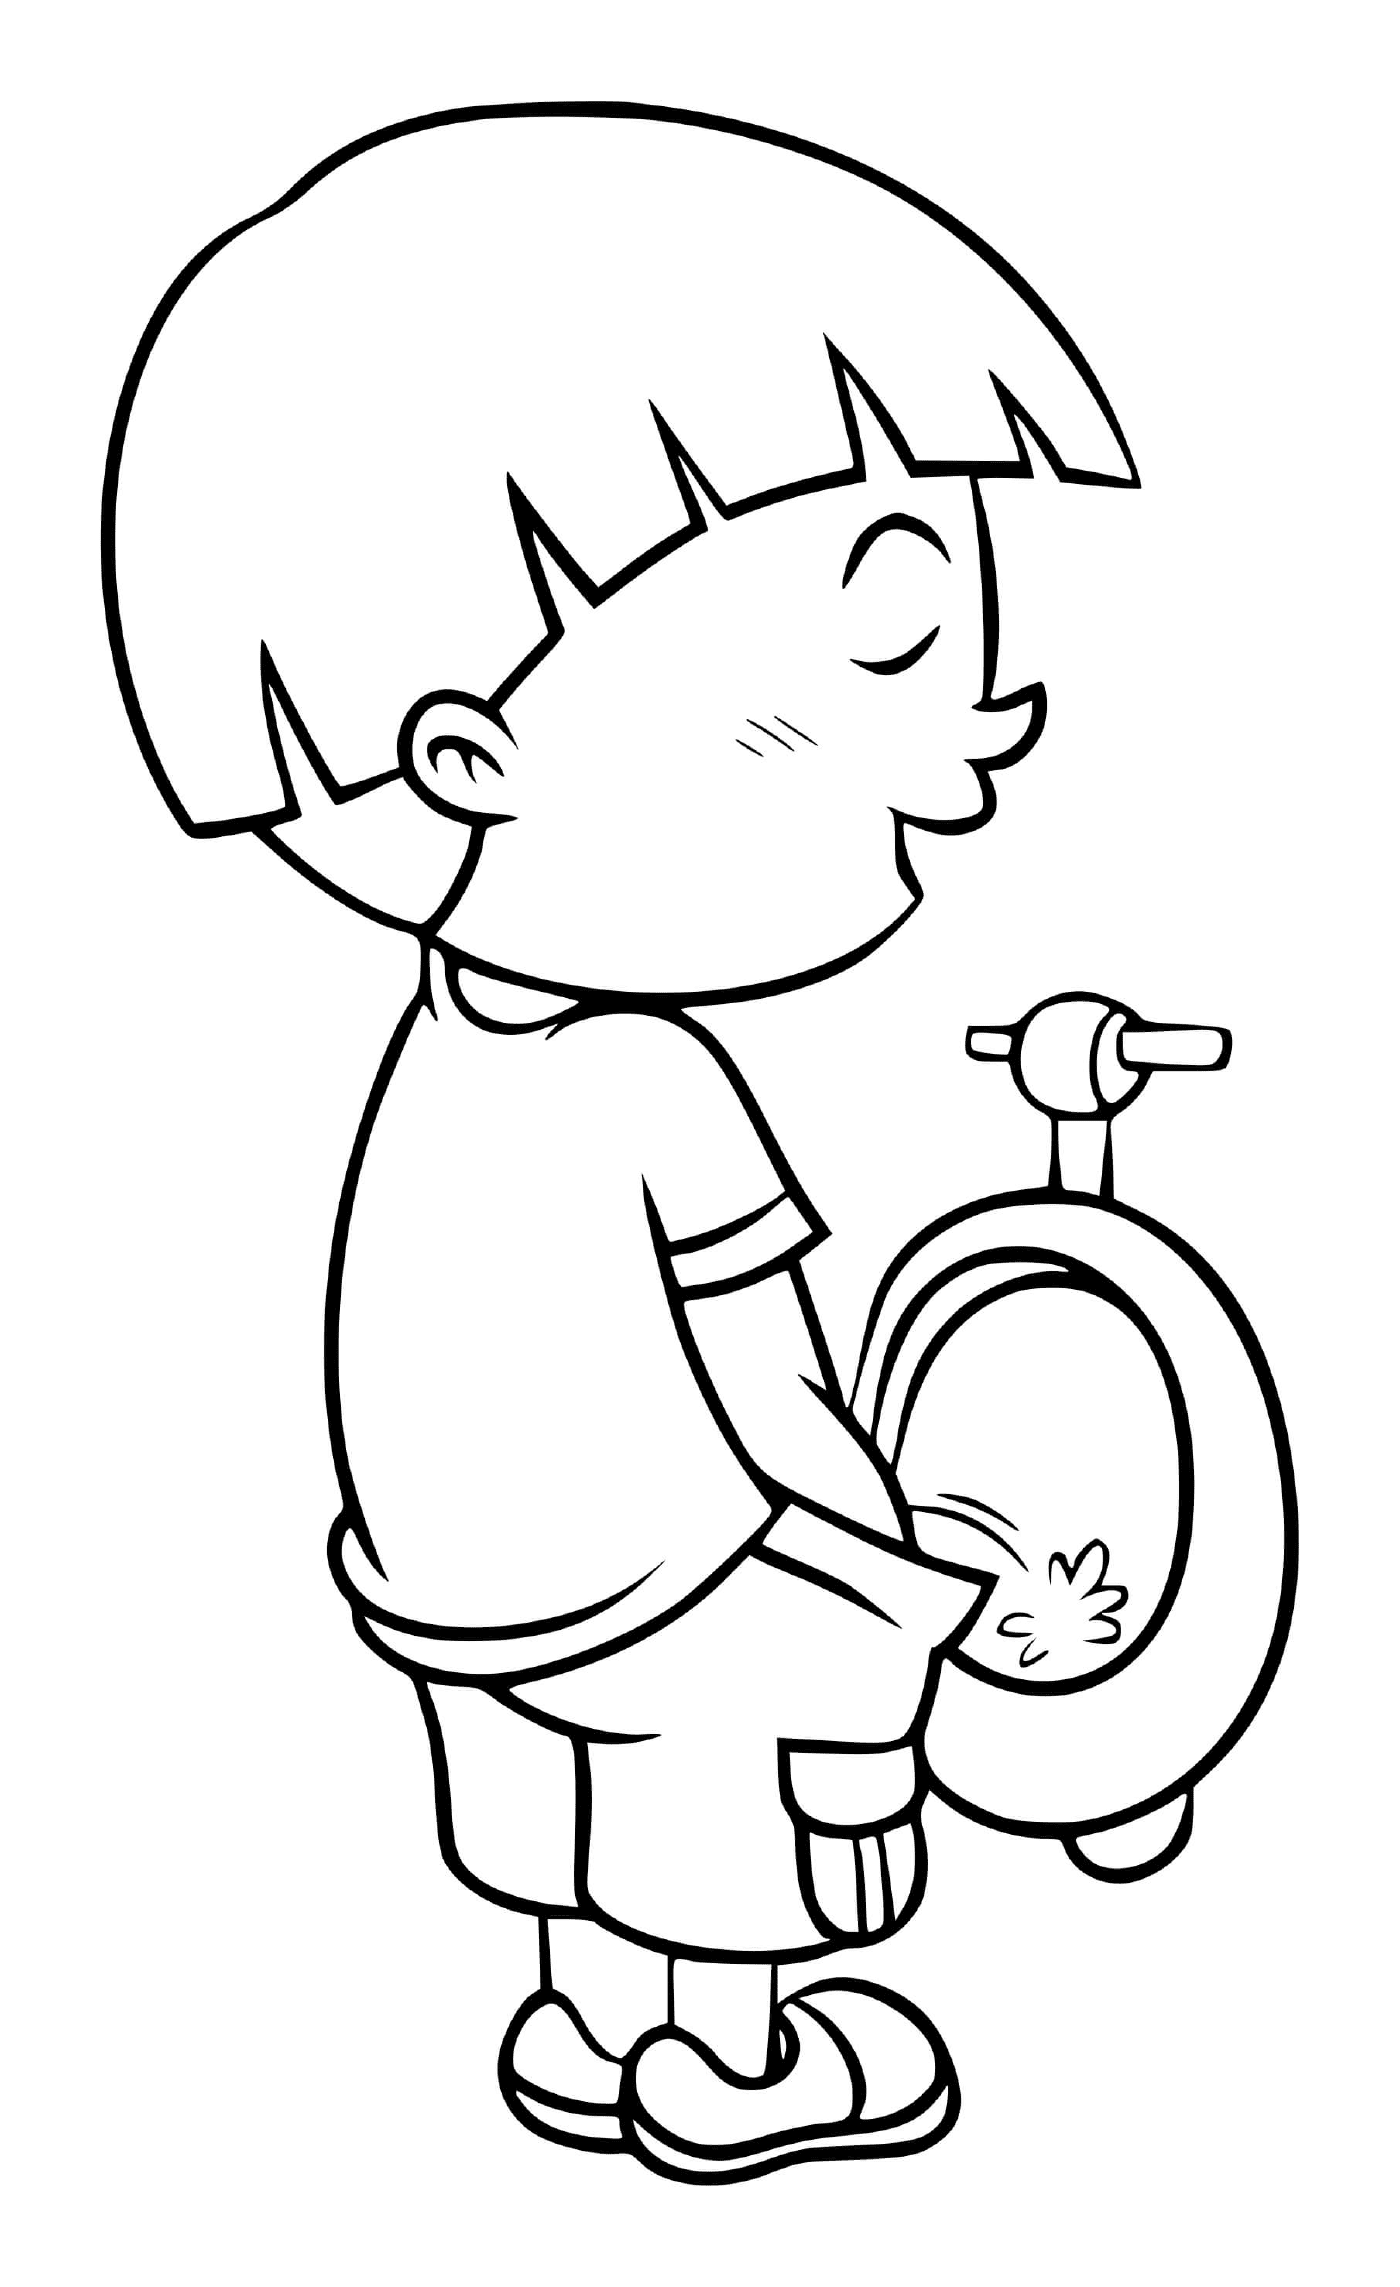  Un ragazzino va in bagno in bagno 